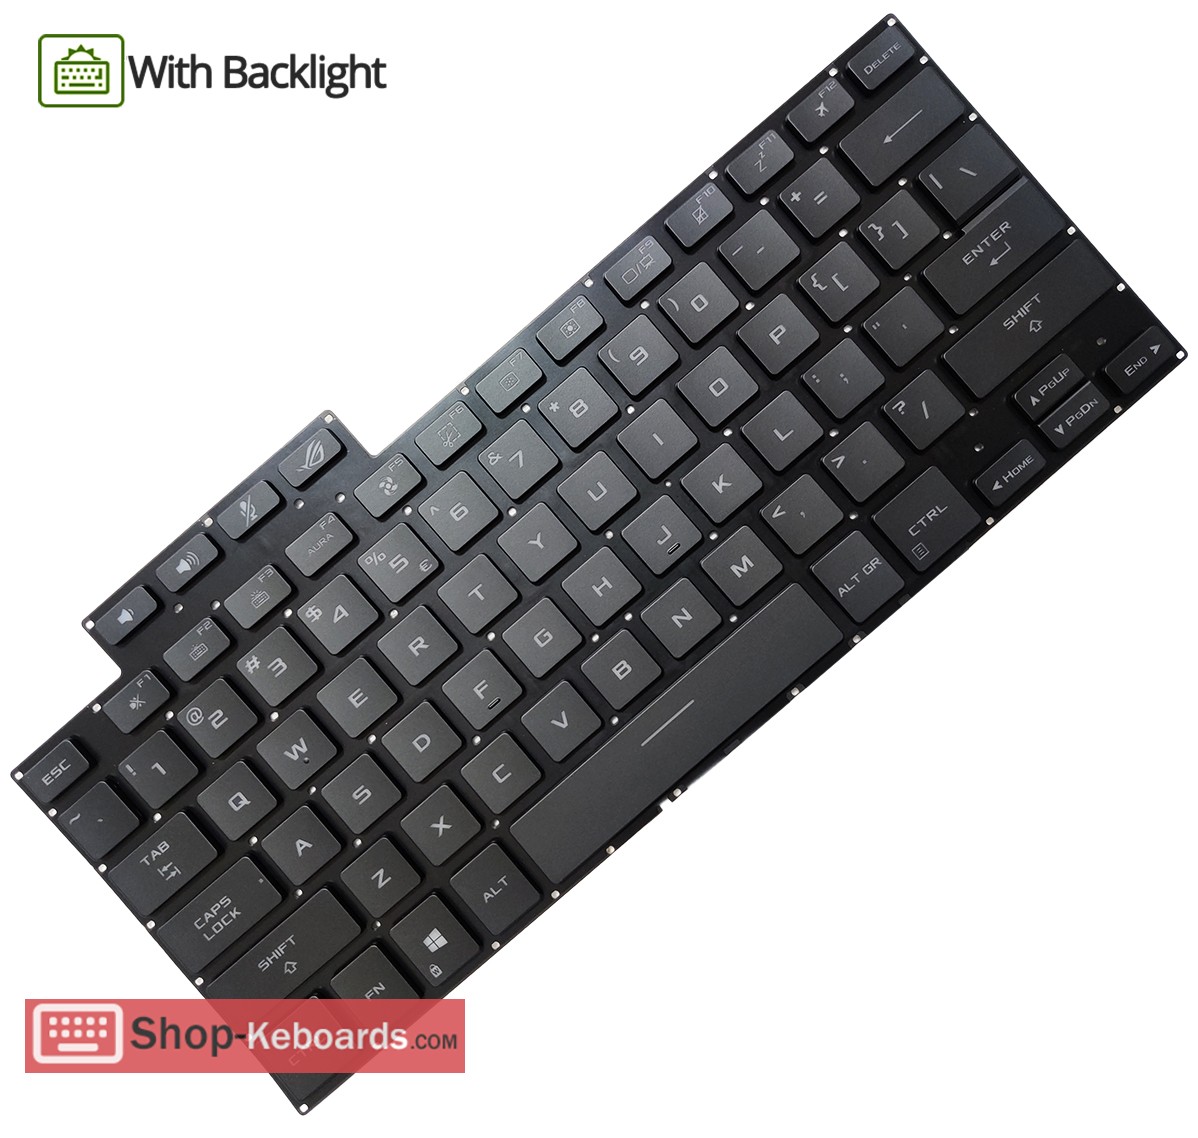 Asus 0KNR0-261QRU00  Keyboard replacement